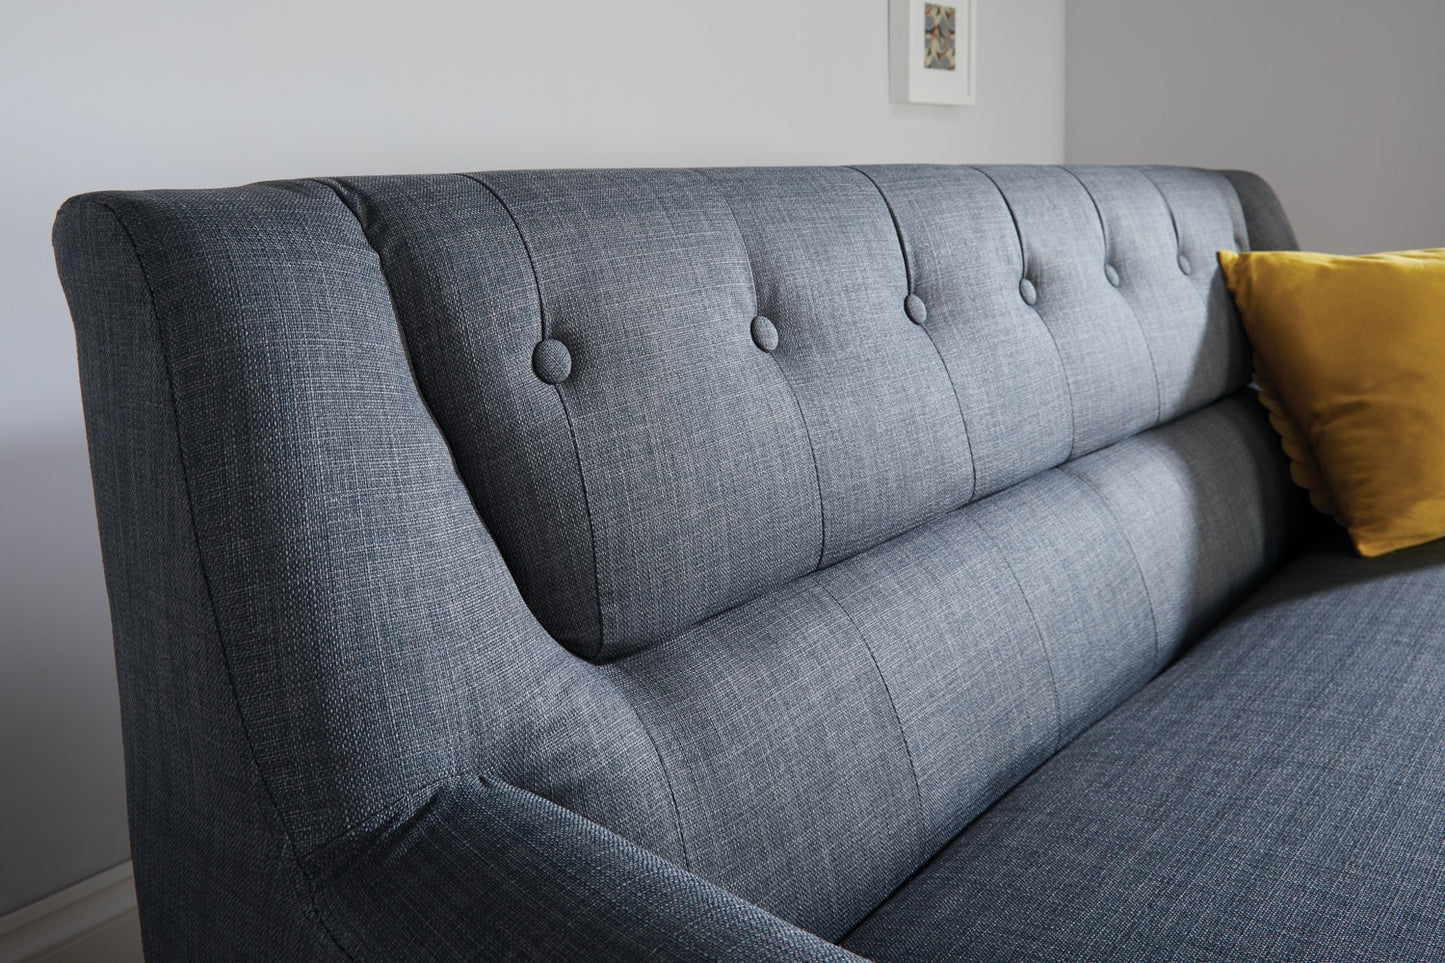 Landon Large Sofa - Grey